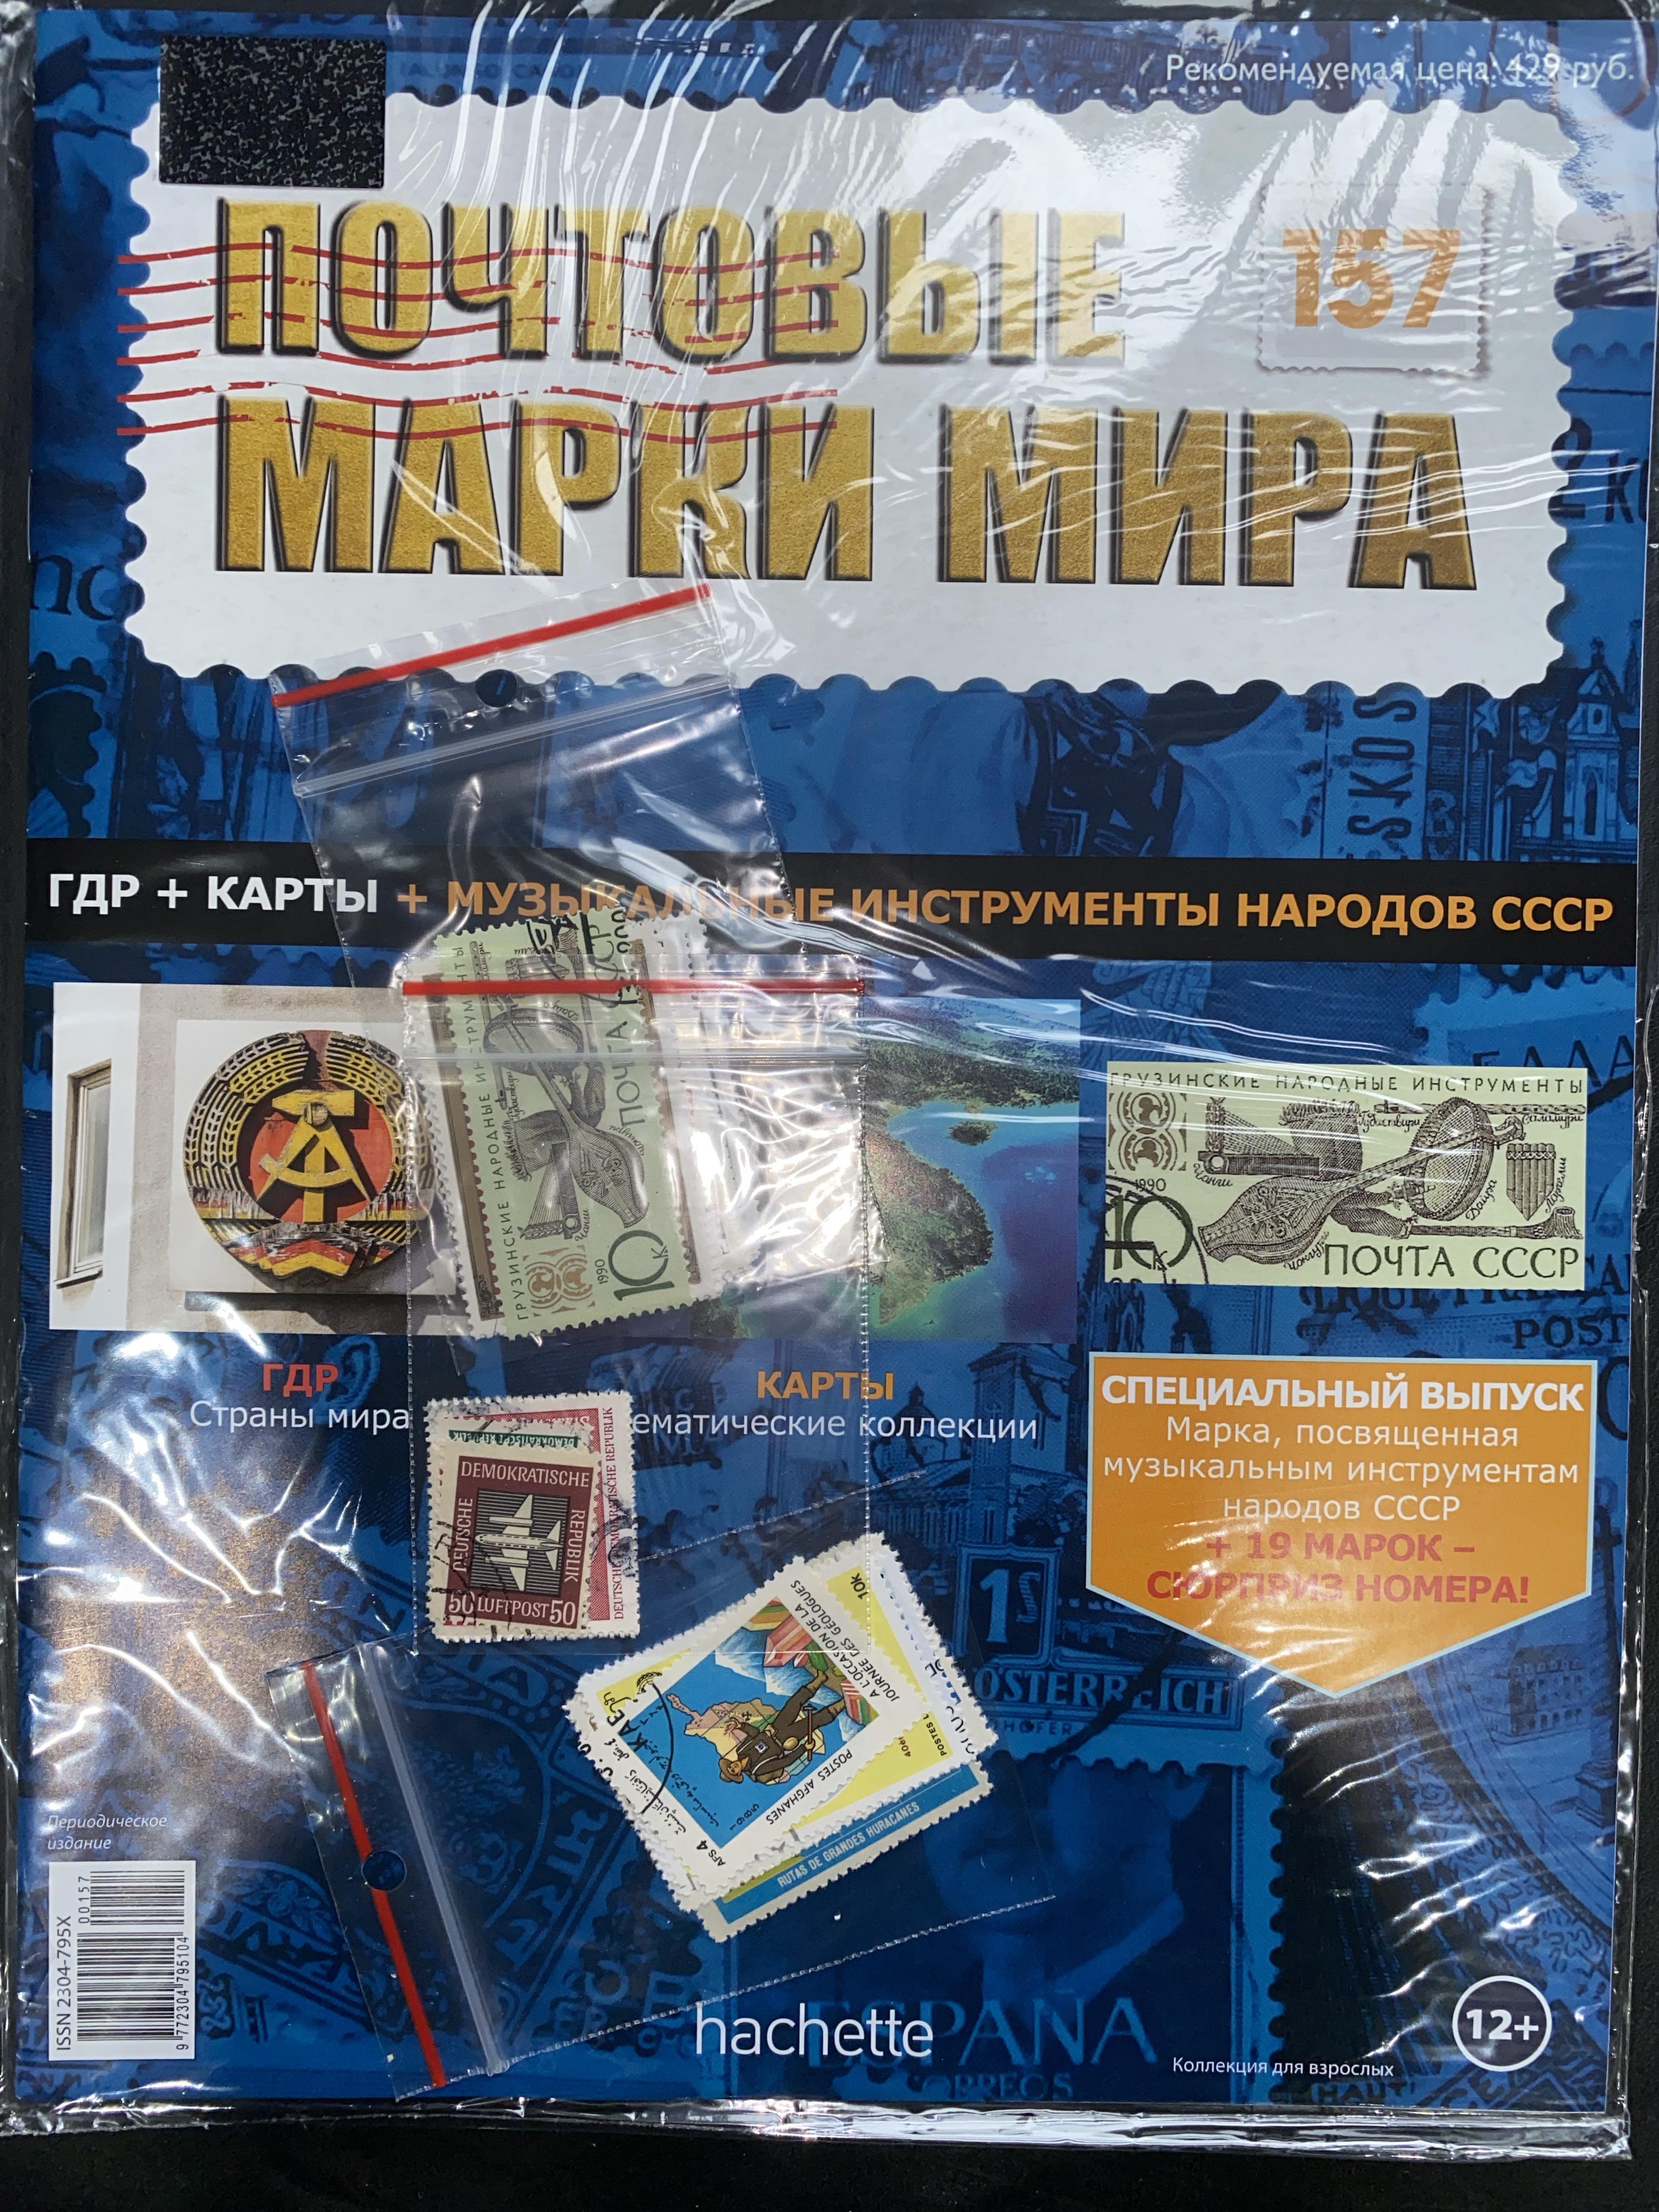 №157 ГДР+Карты+Музыкальные инструменты народов СССР+Лист для хранения марок